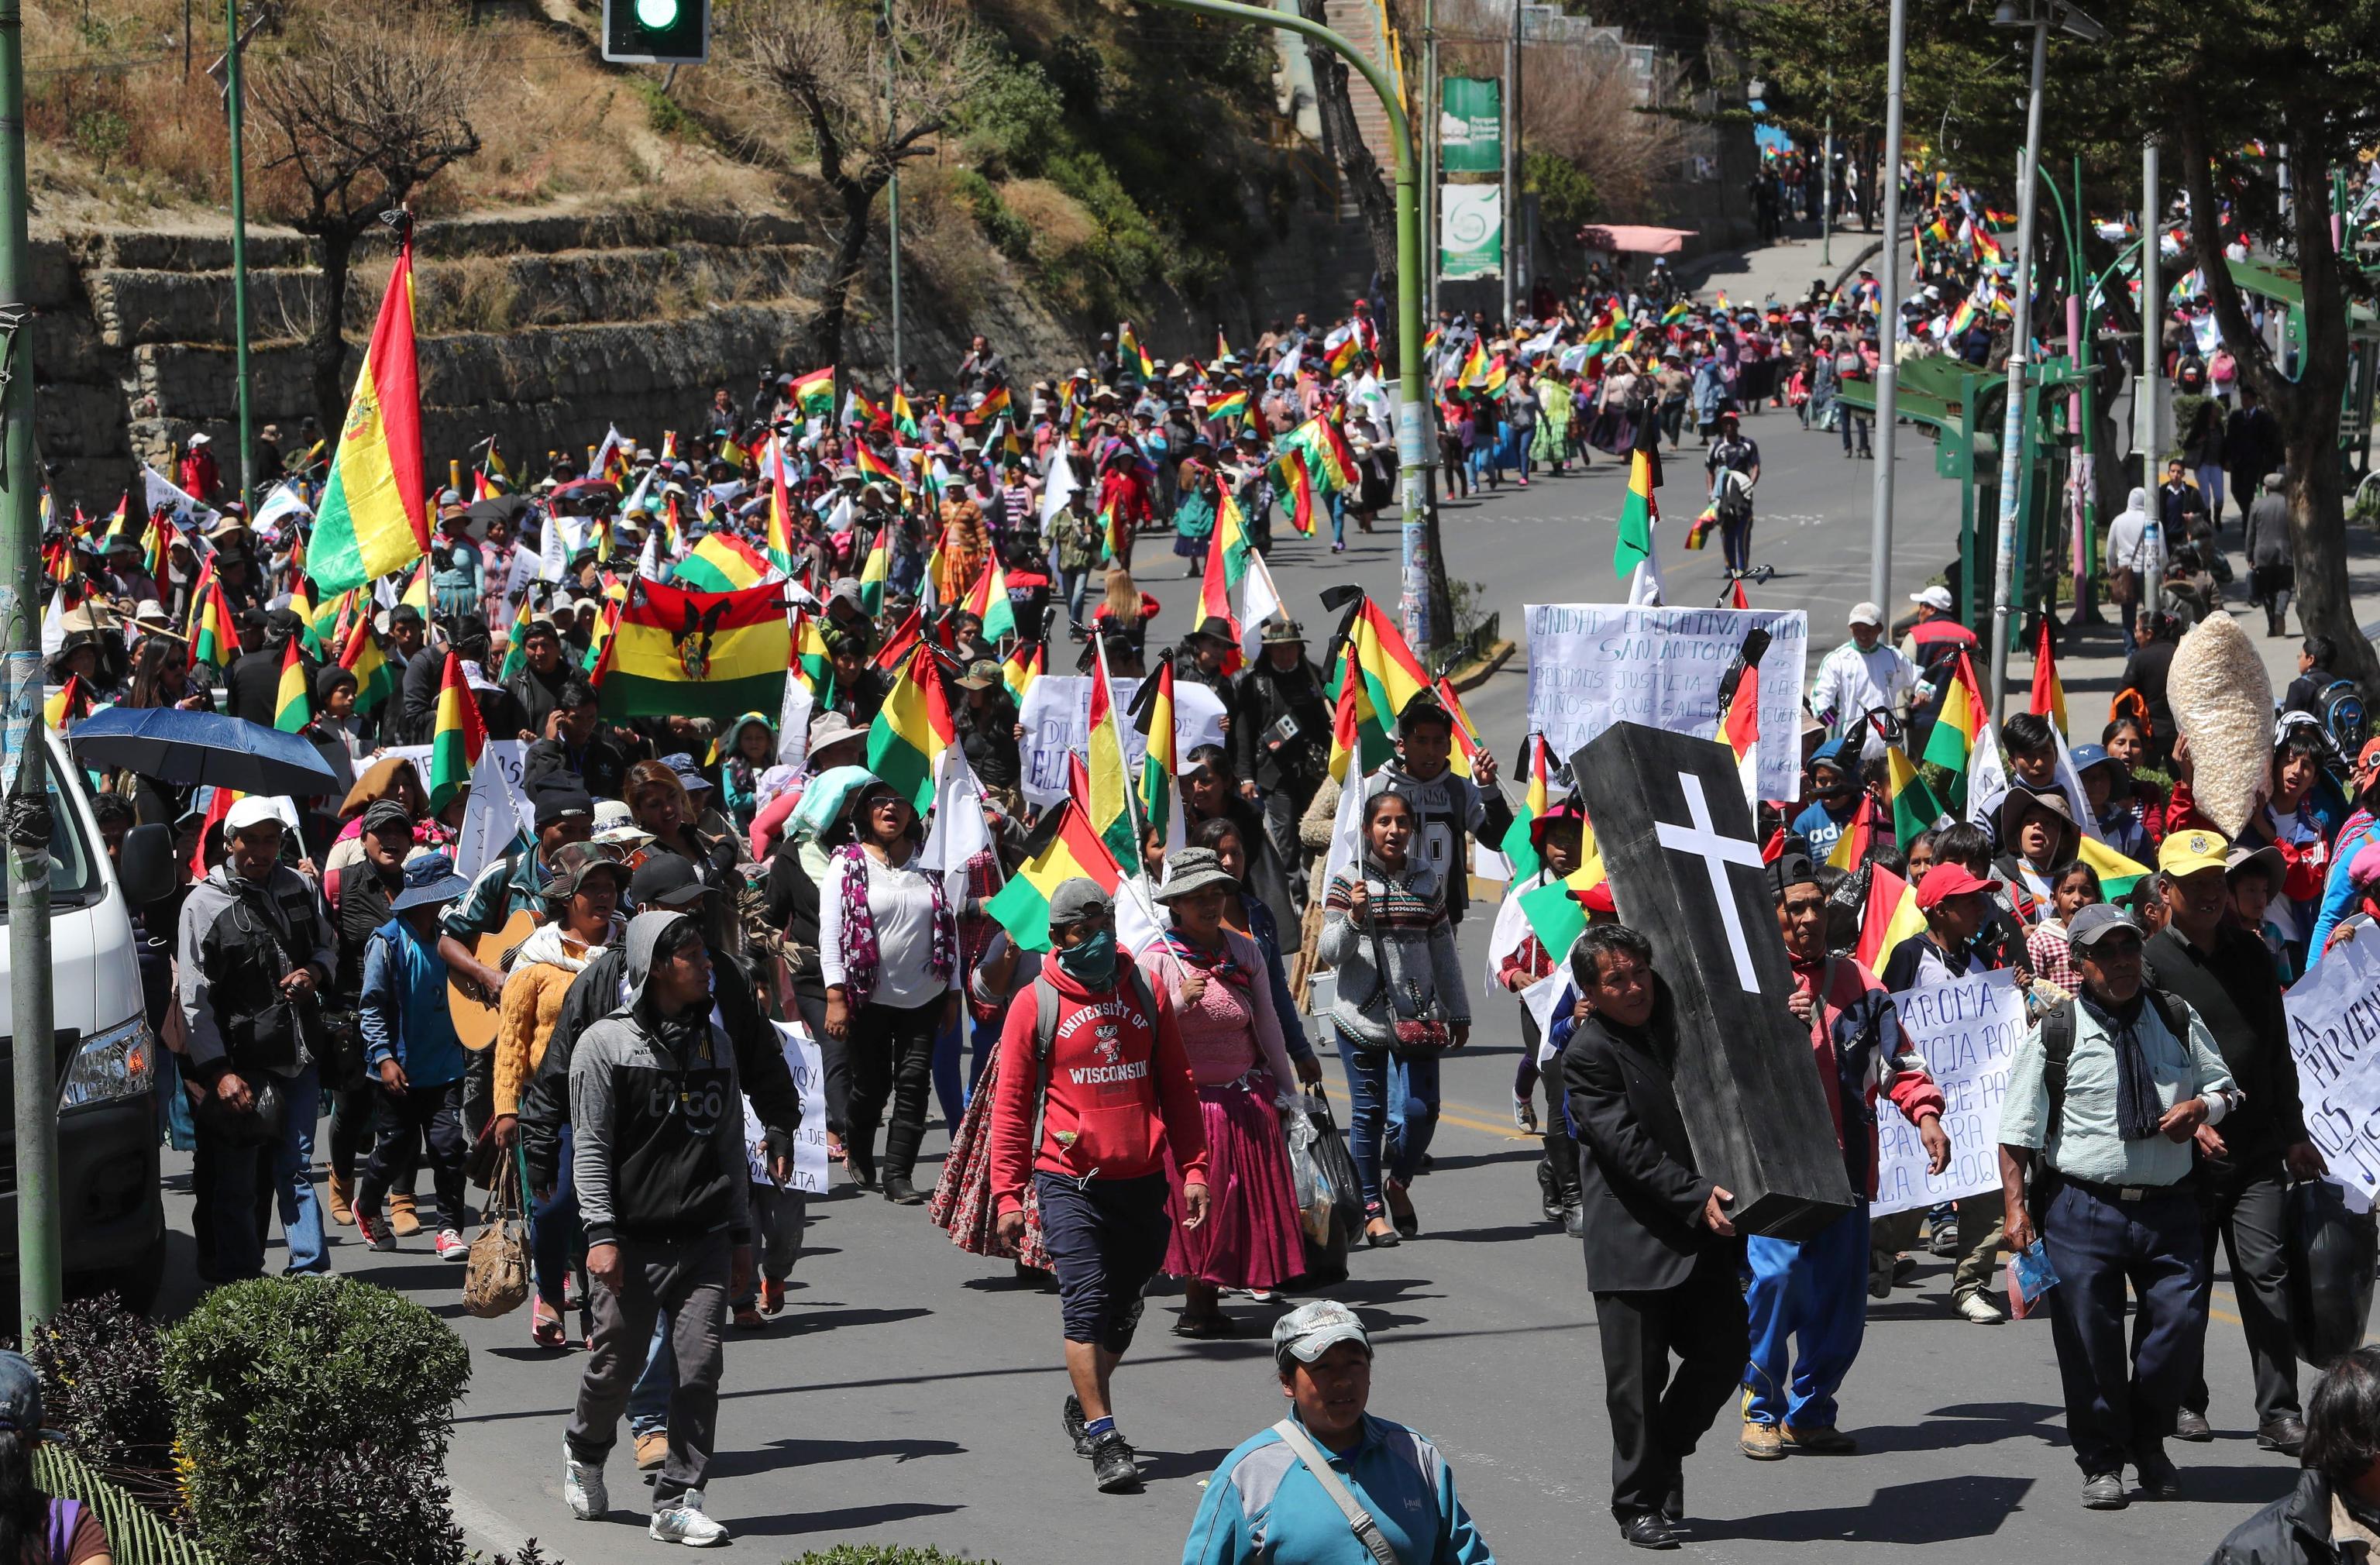 Il corteo dei dimostranti per le strade di La Paz, Bolivia